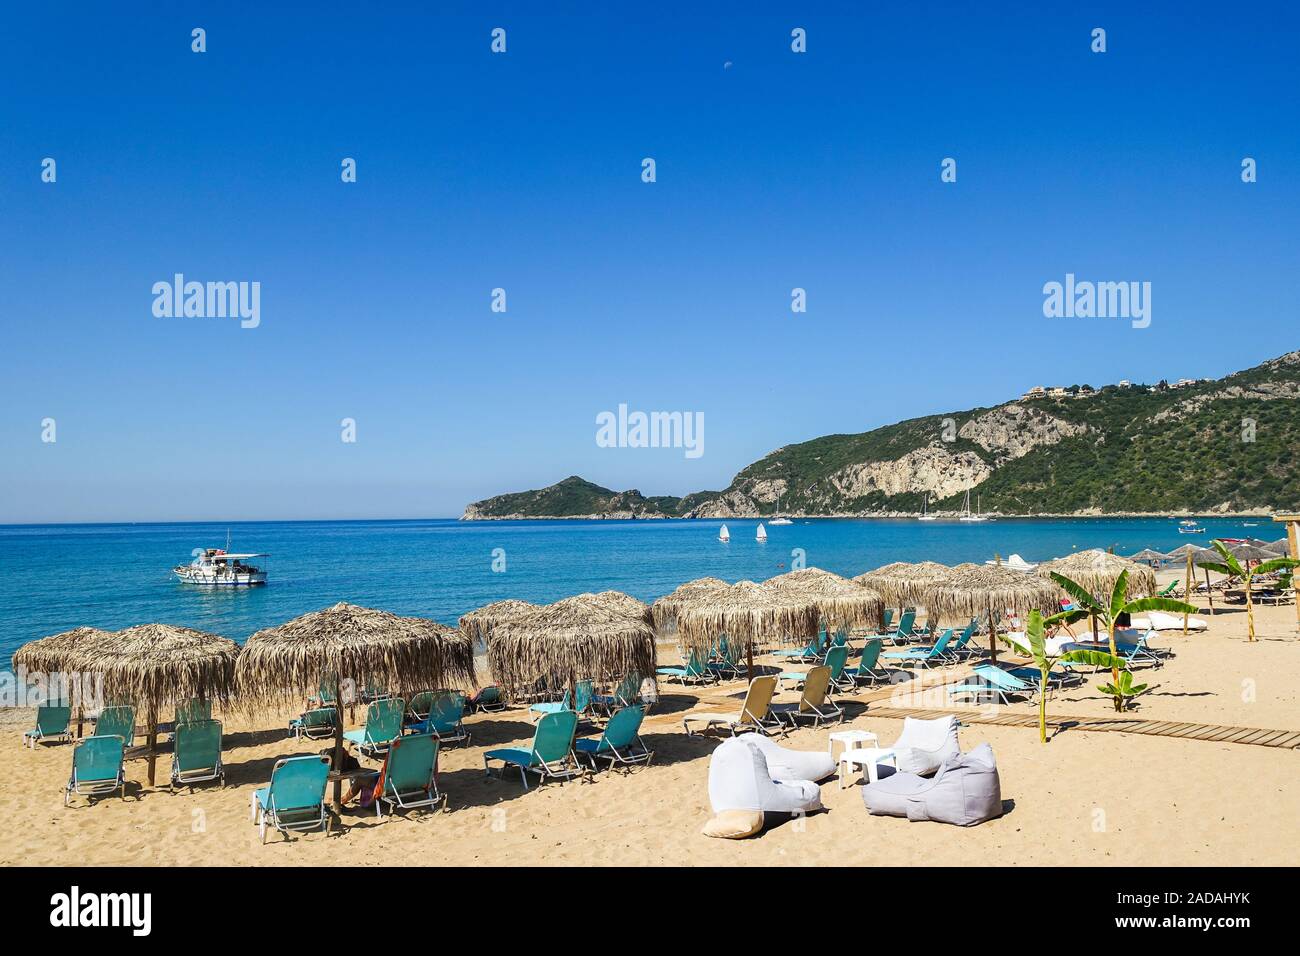 La baia di Agions Geoergios Pagi, una popolare destinazione turistica, Corfù, Grecia Foto Stock